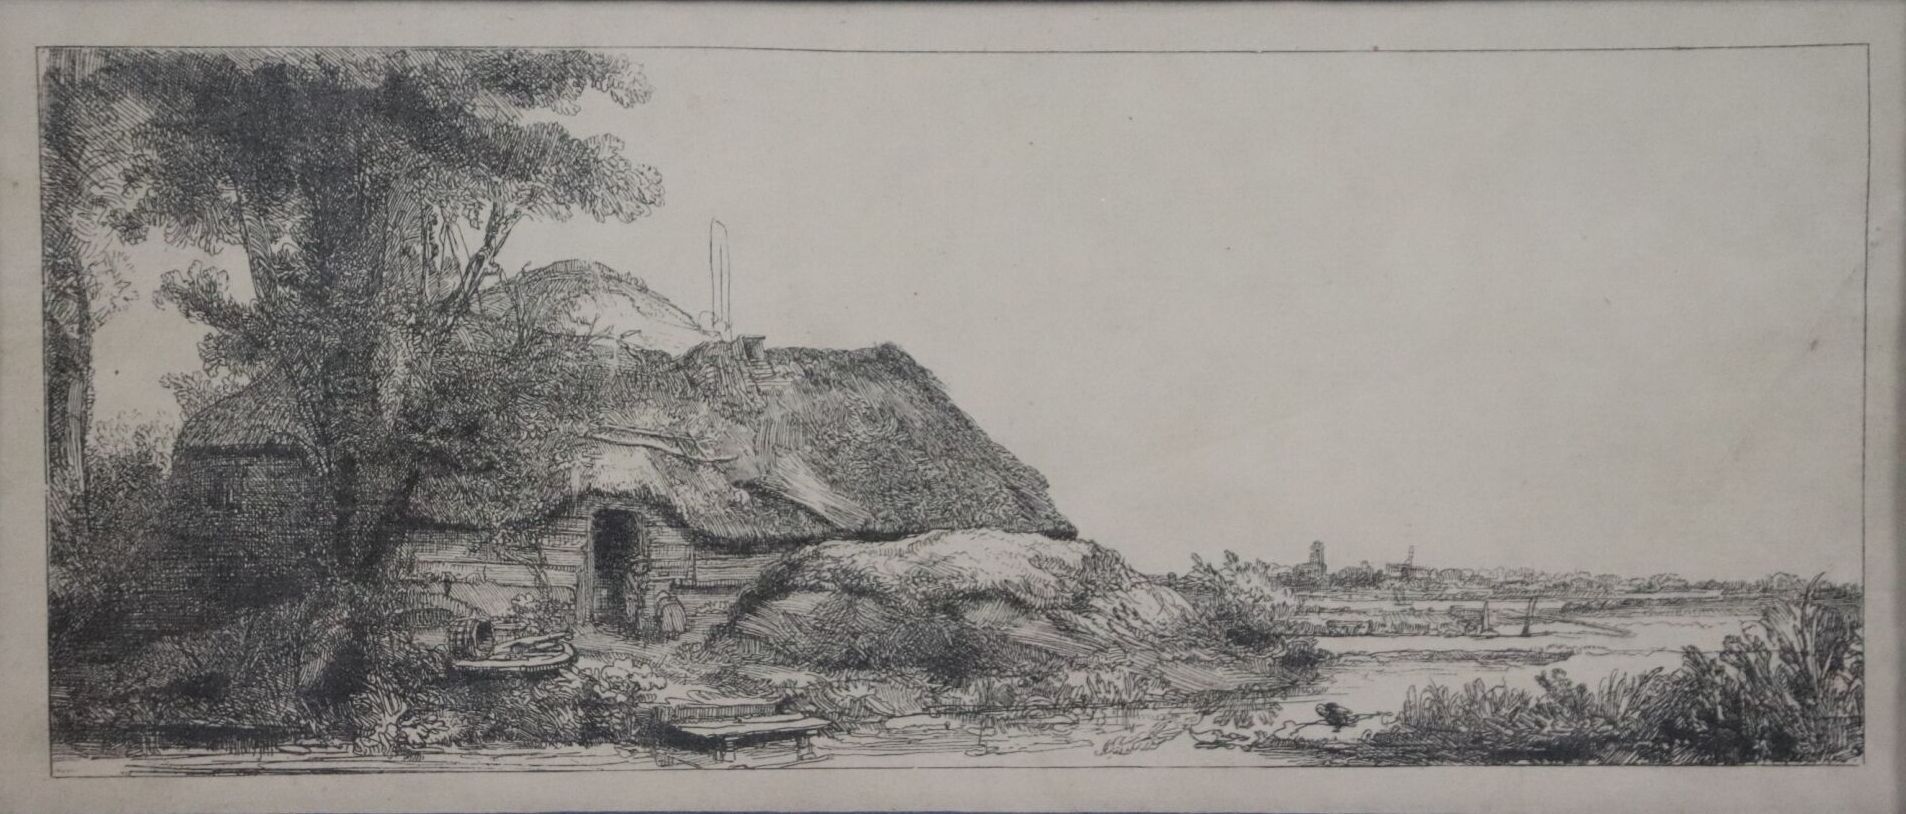 Null REMBRANDT VAN RIJN (1606-1669), nach.

Die Reetdachkate mit dem großen Baum&hellip;